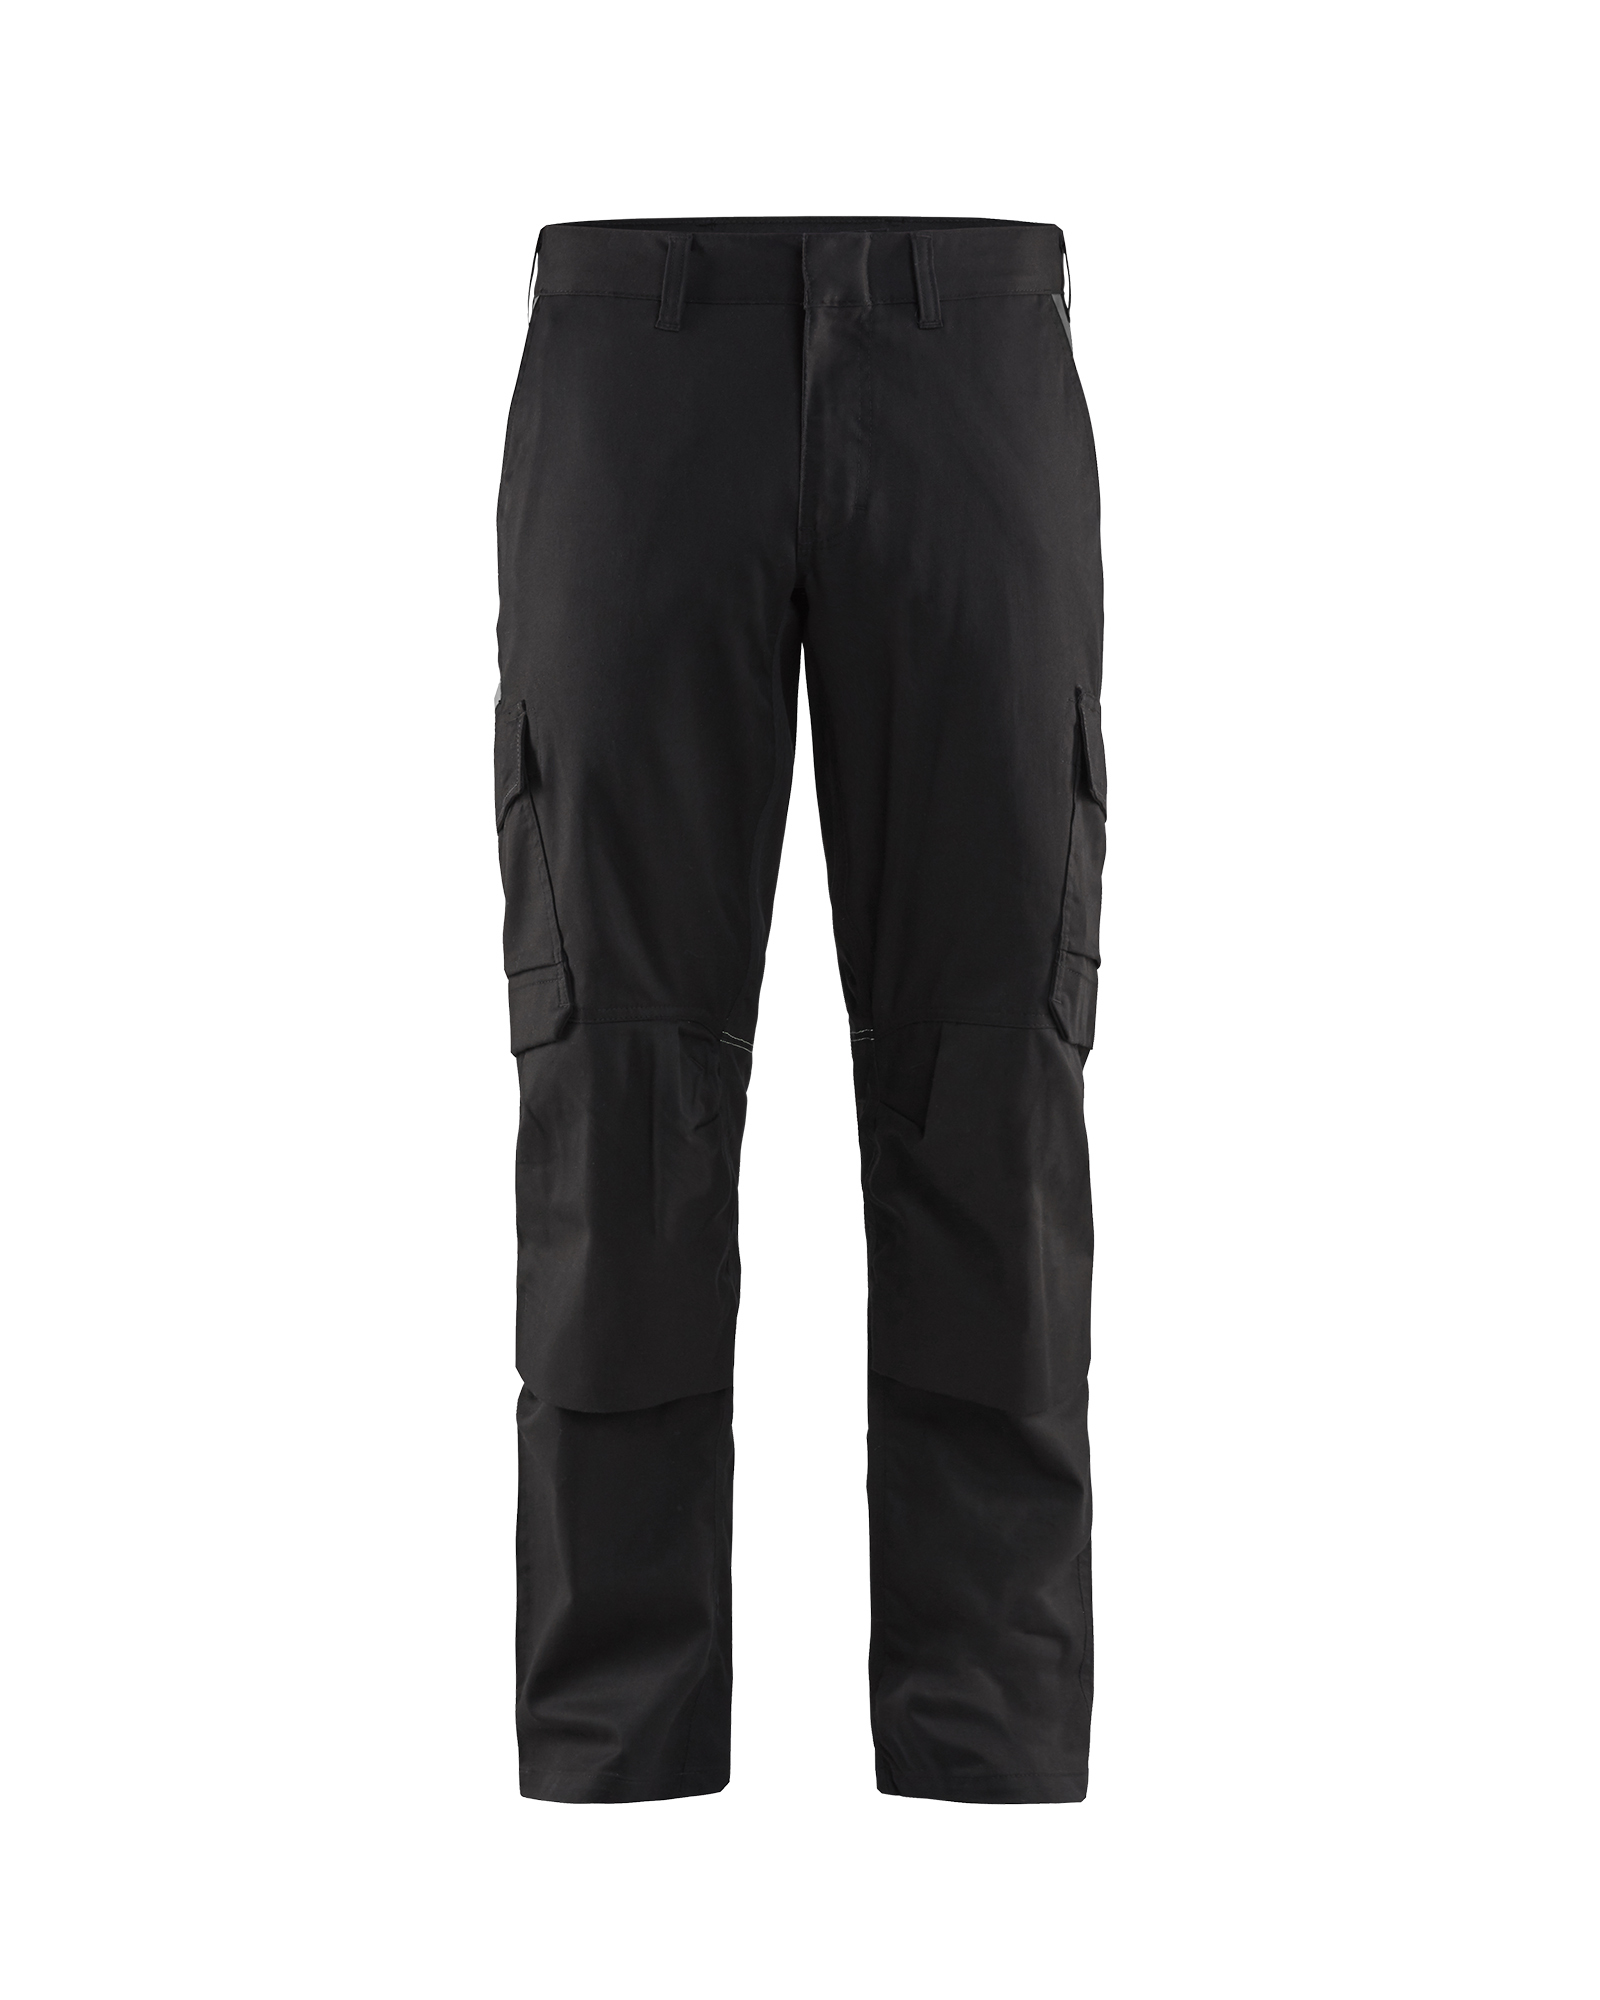 Pantalon industrie avec poches genouillères stretch 2D Blåkläder 1448 Noir/Gris foncé Blaklader - 144818329998C